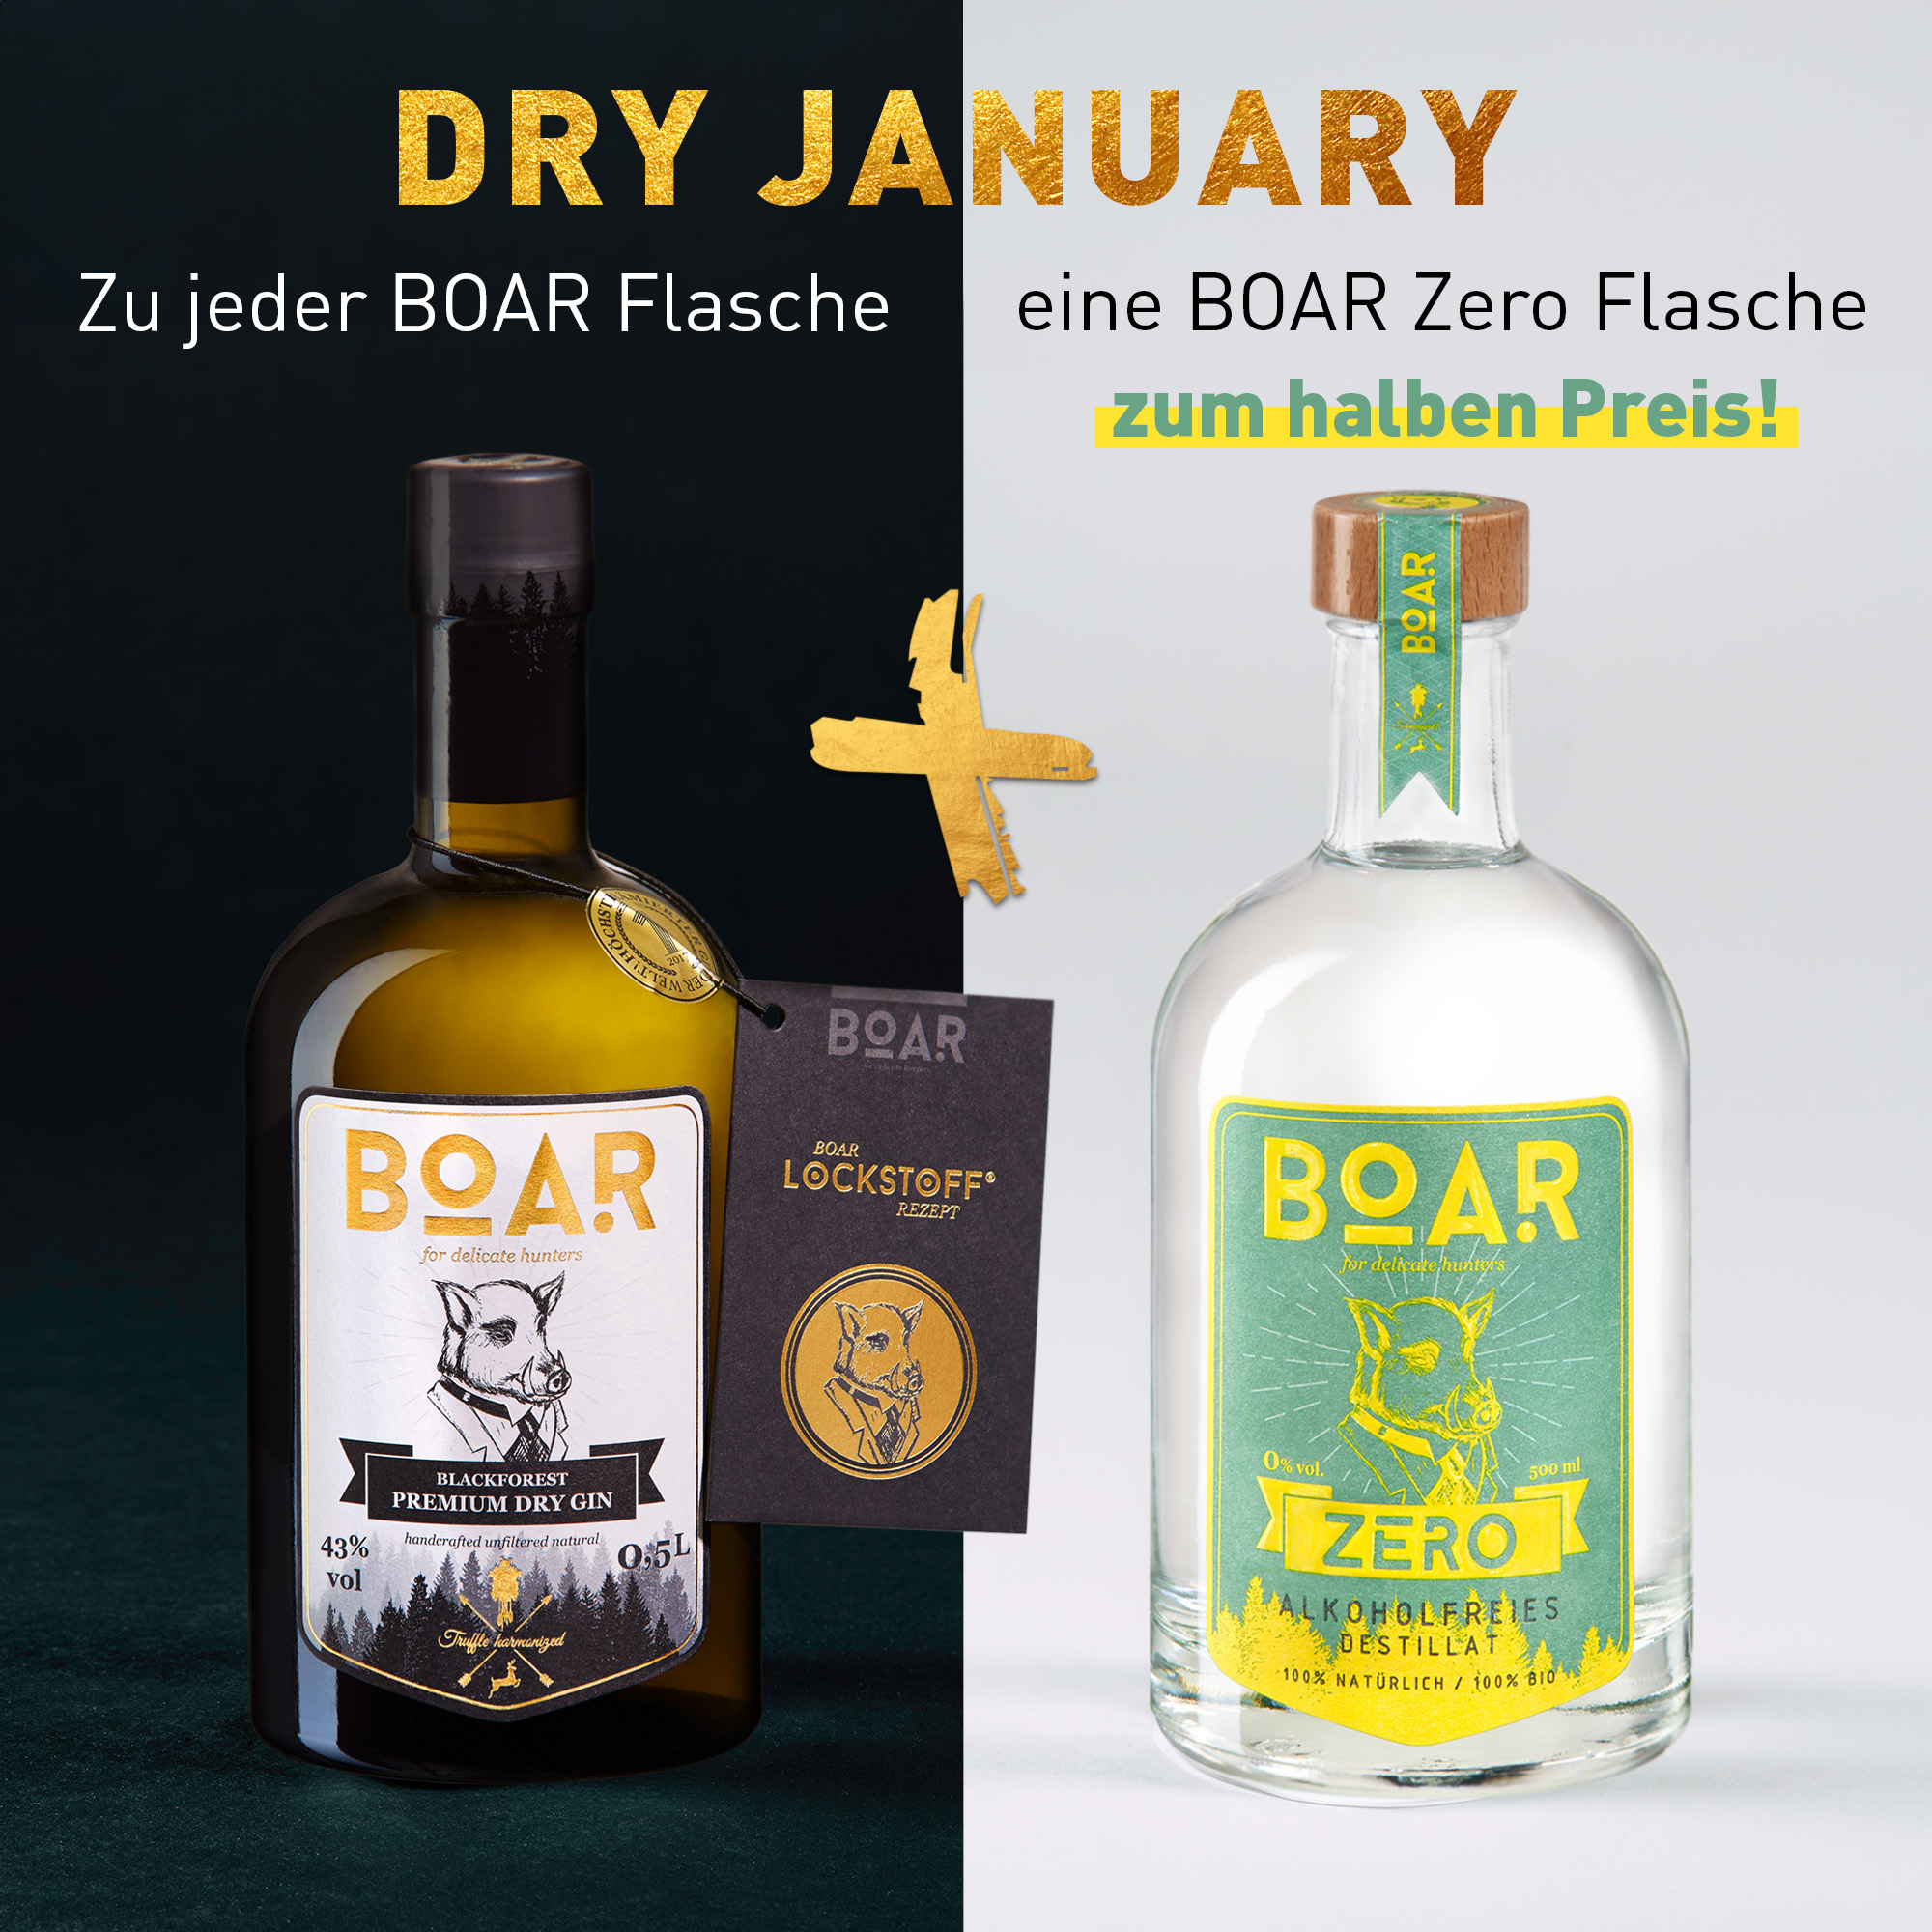 BOAR Gin kaufen, BOAR Zero zum halben Preis erhalten + 2 kostenlose exklusive Nachtmanngläser!